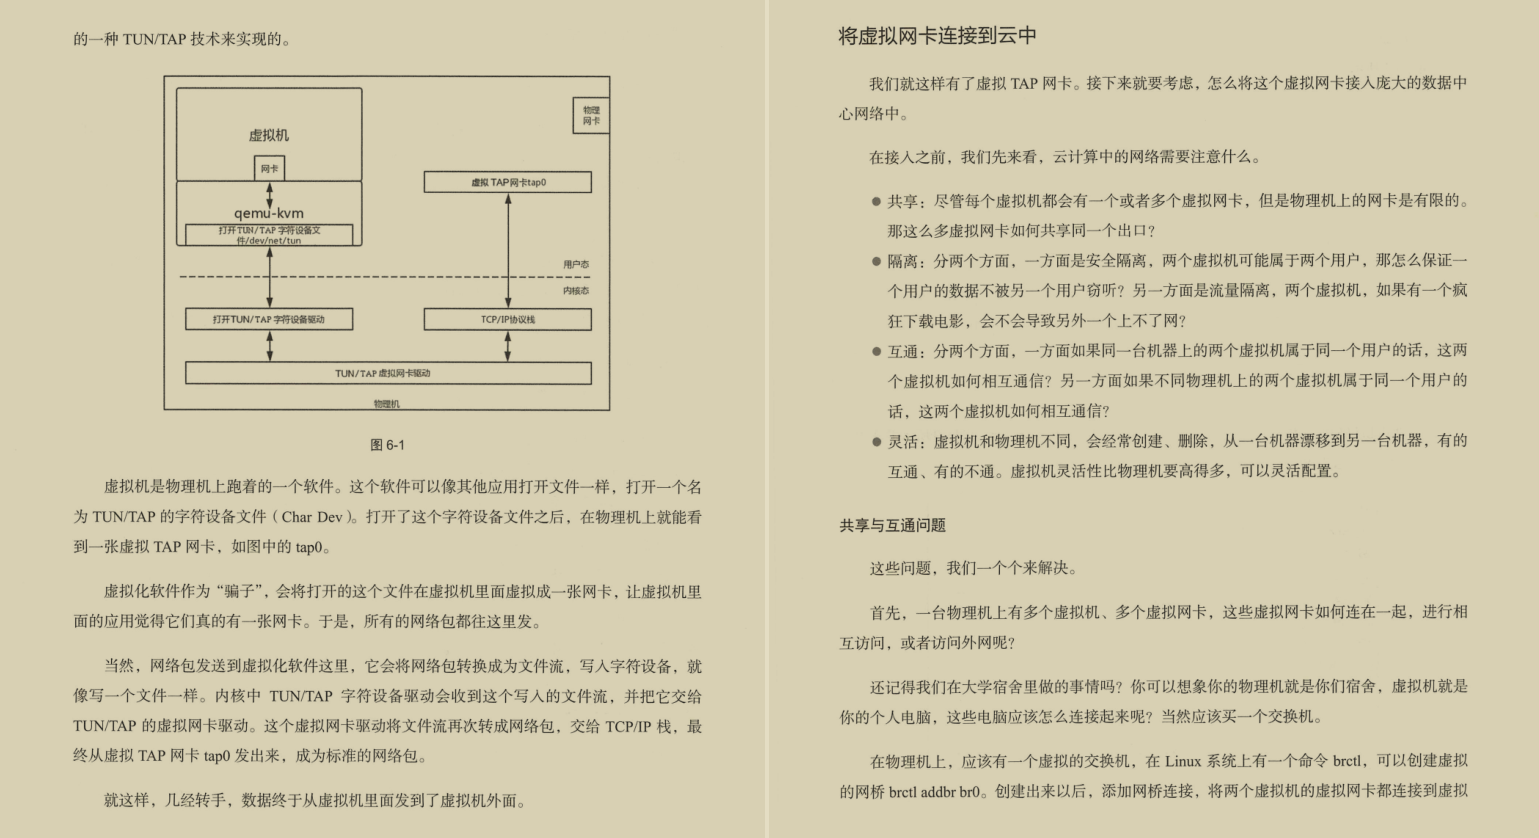 又一里程碑！华为顶级工程师总结的网络协议核心手册首次线上曝光